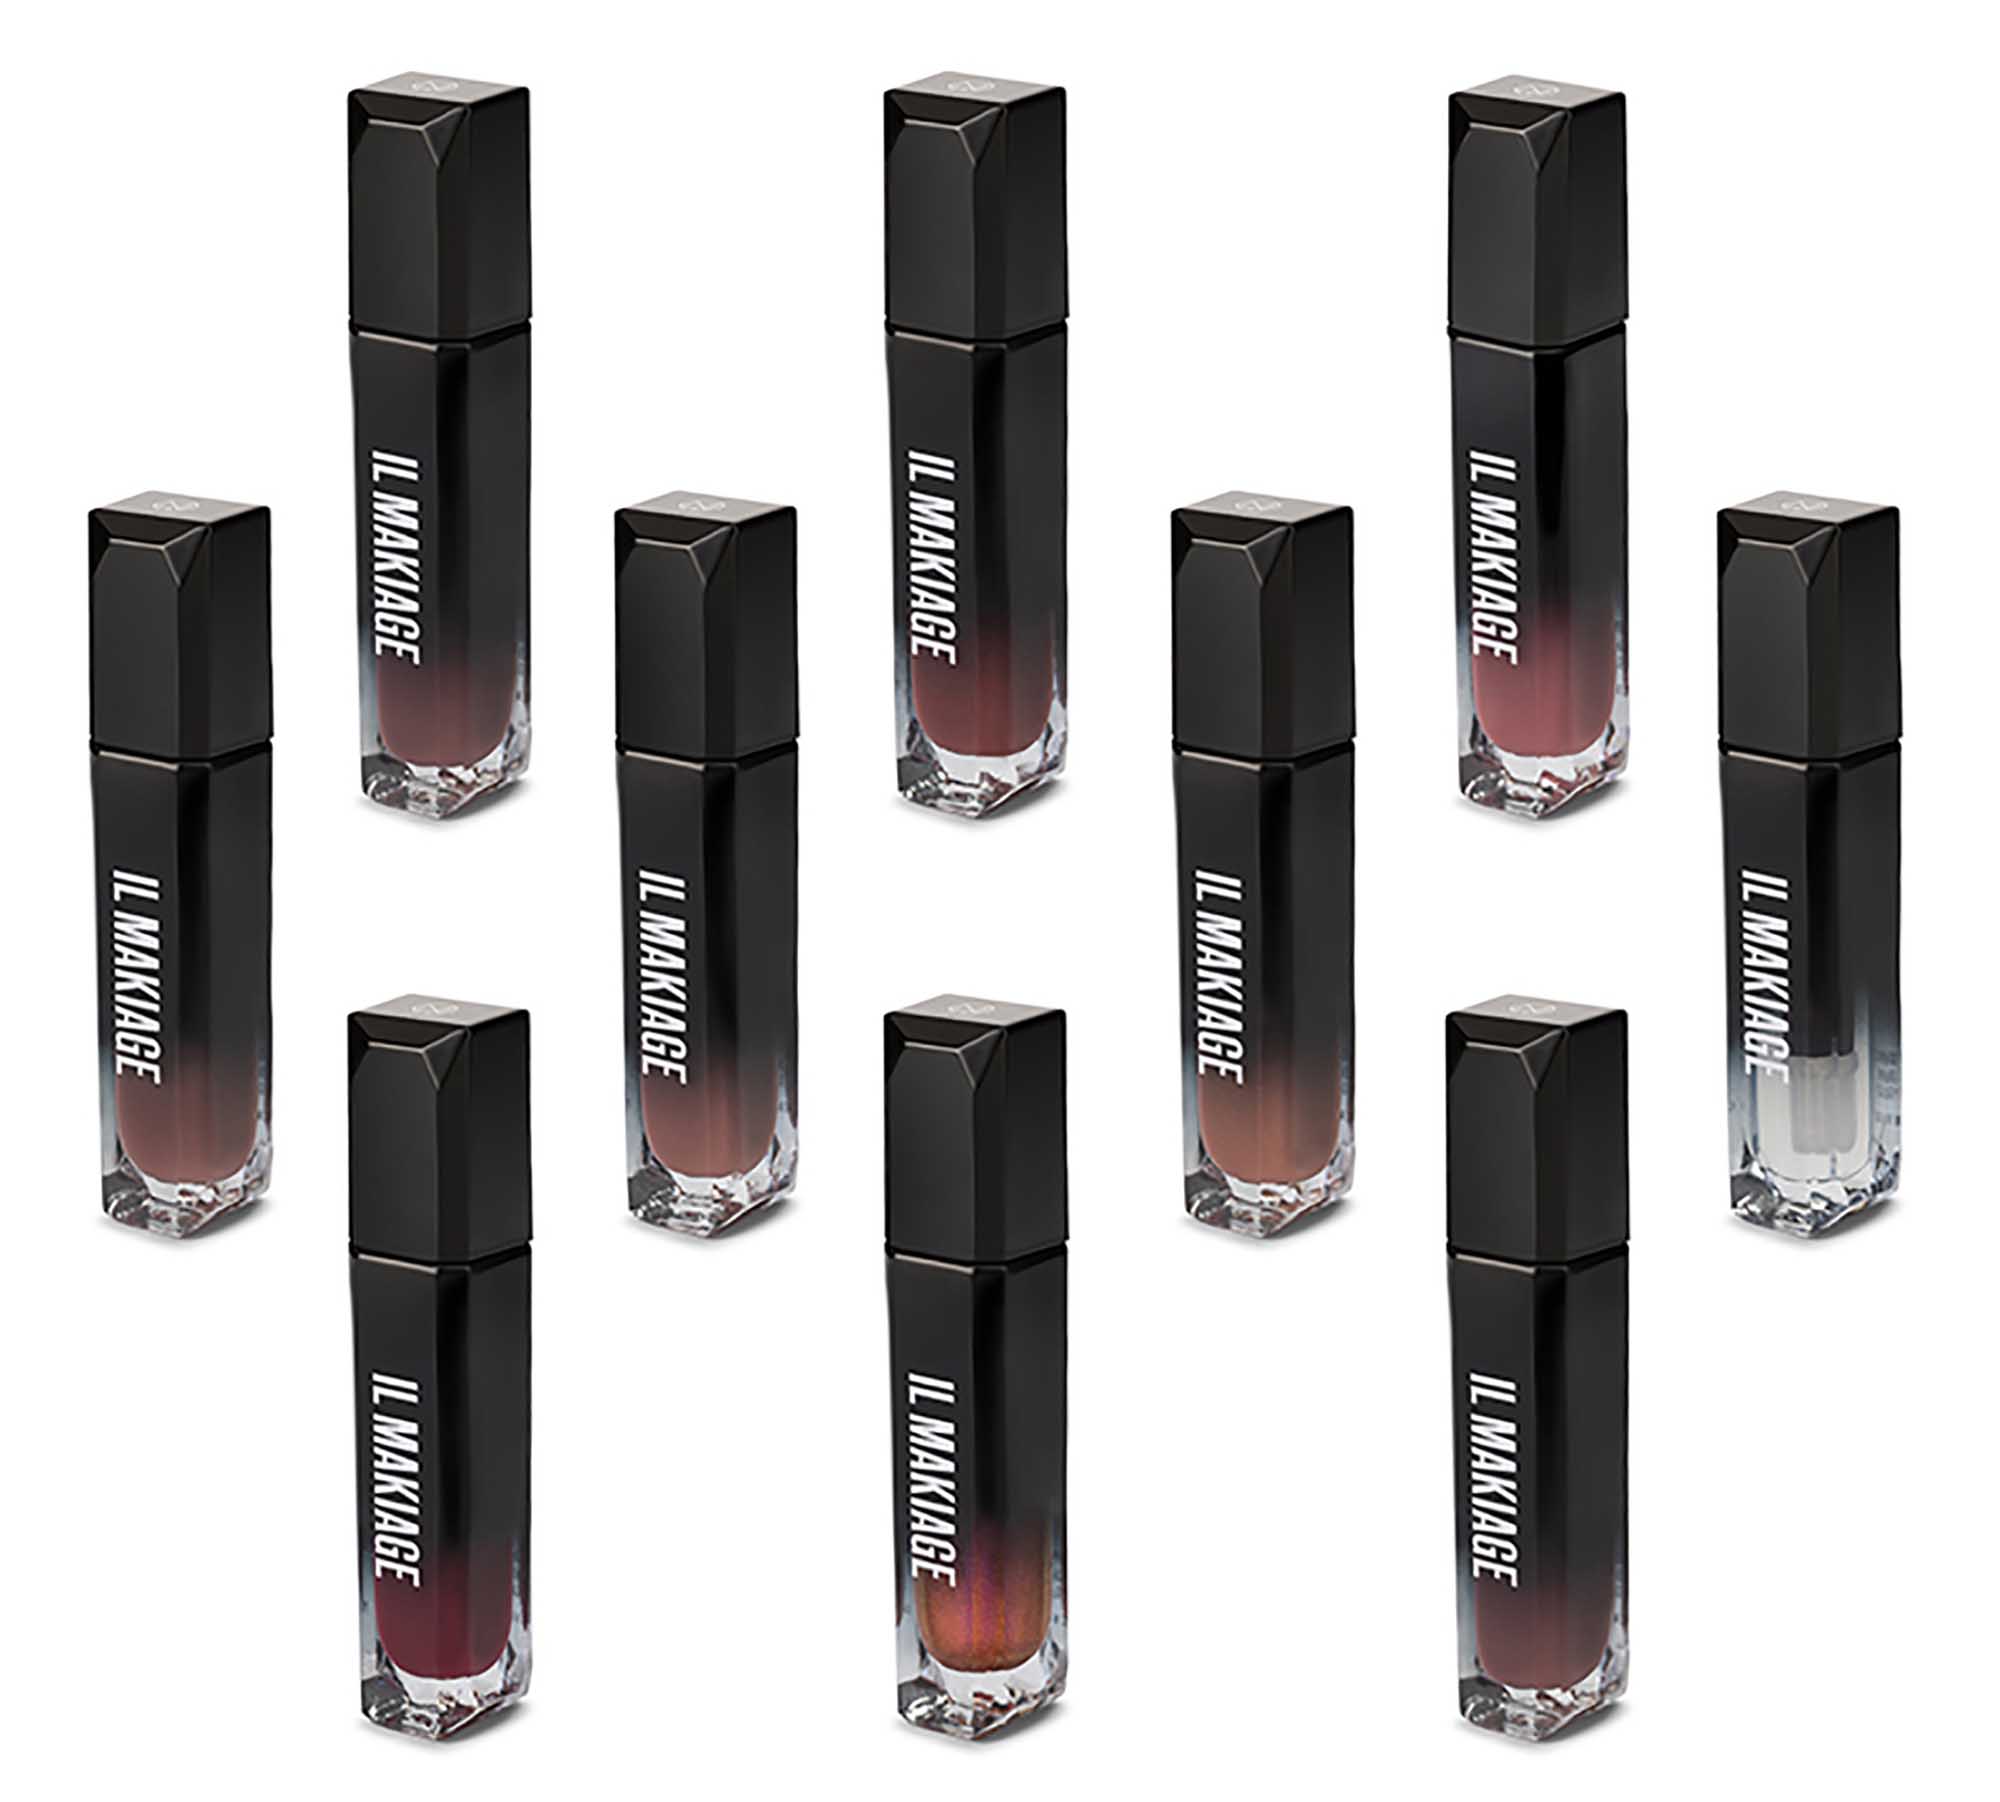 הגלוסים Lipsrvice hi shine lip החדשים של איל מקיאג', איפור, מוצרי איפור